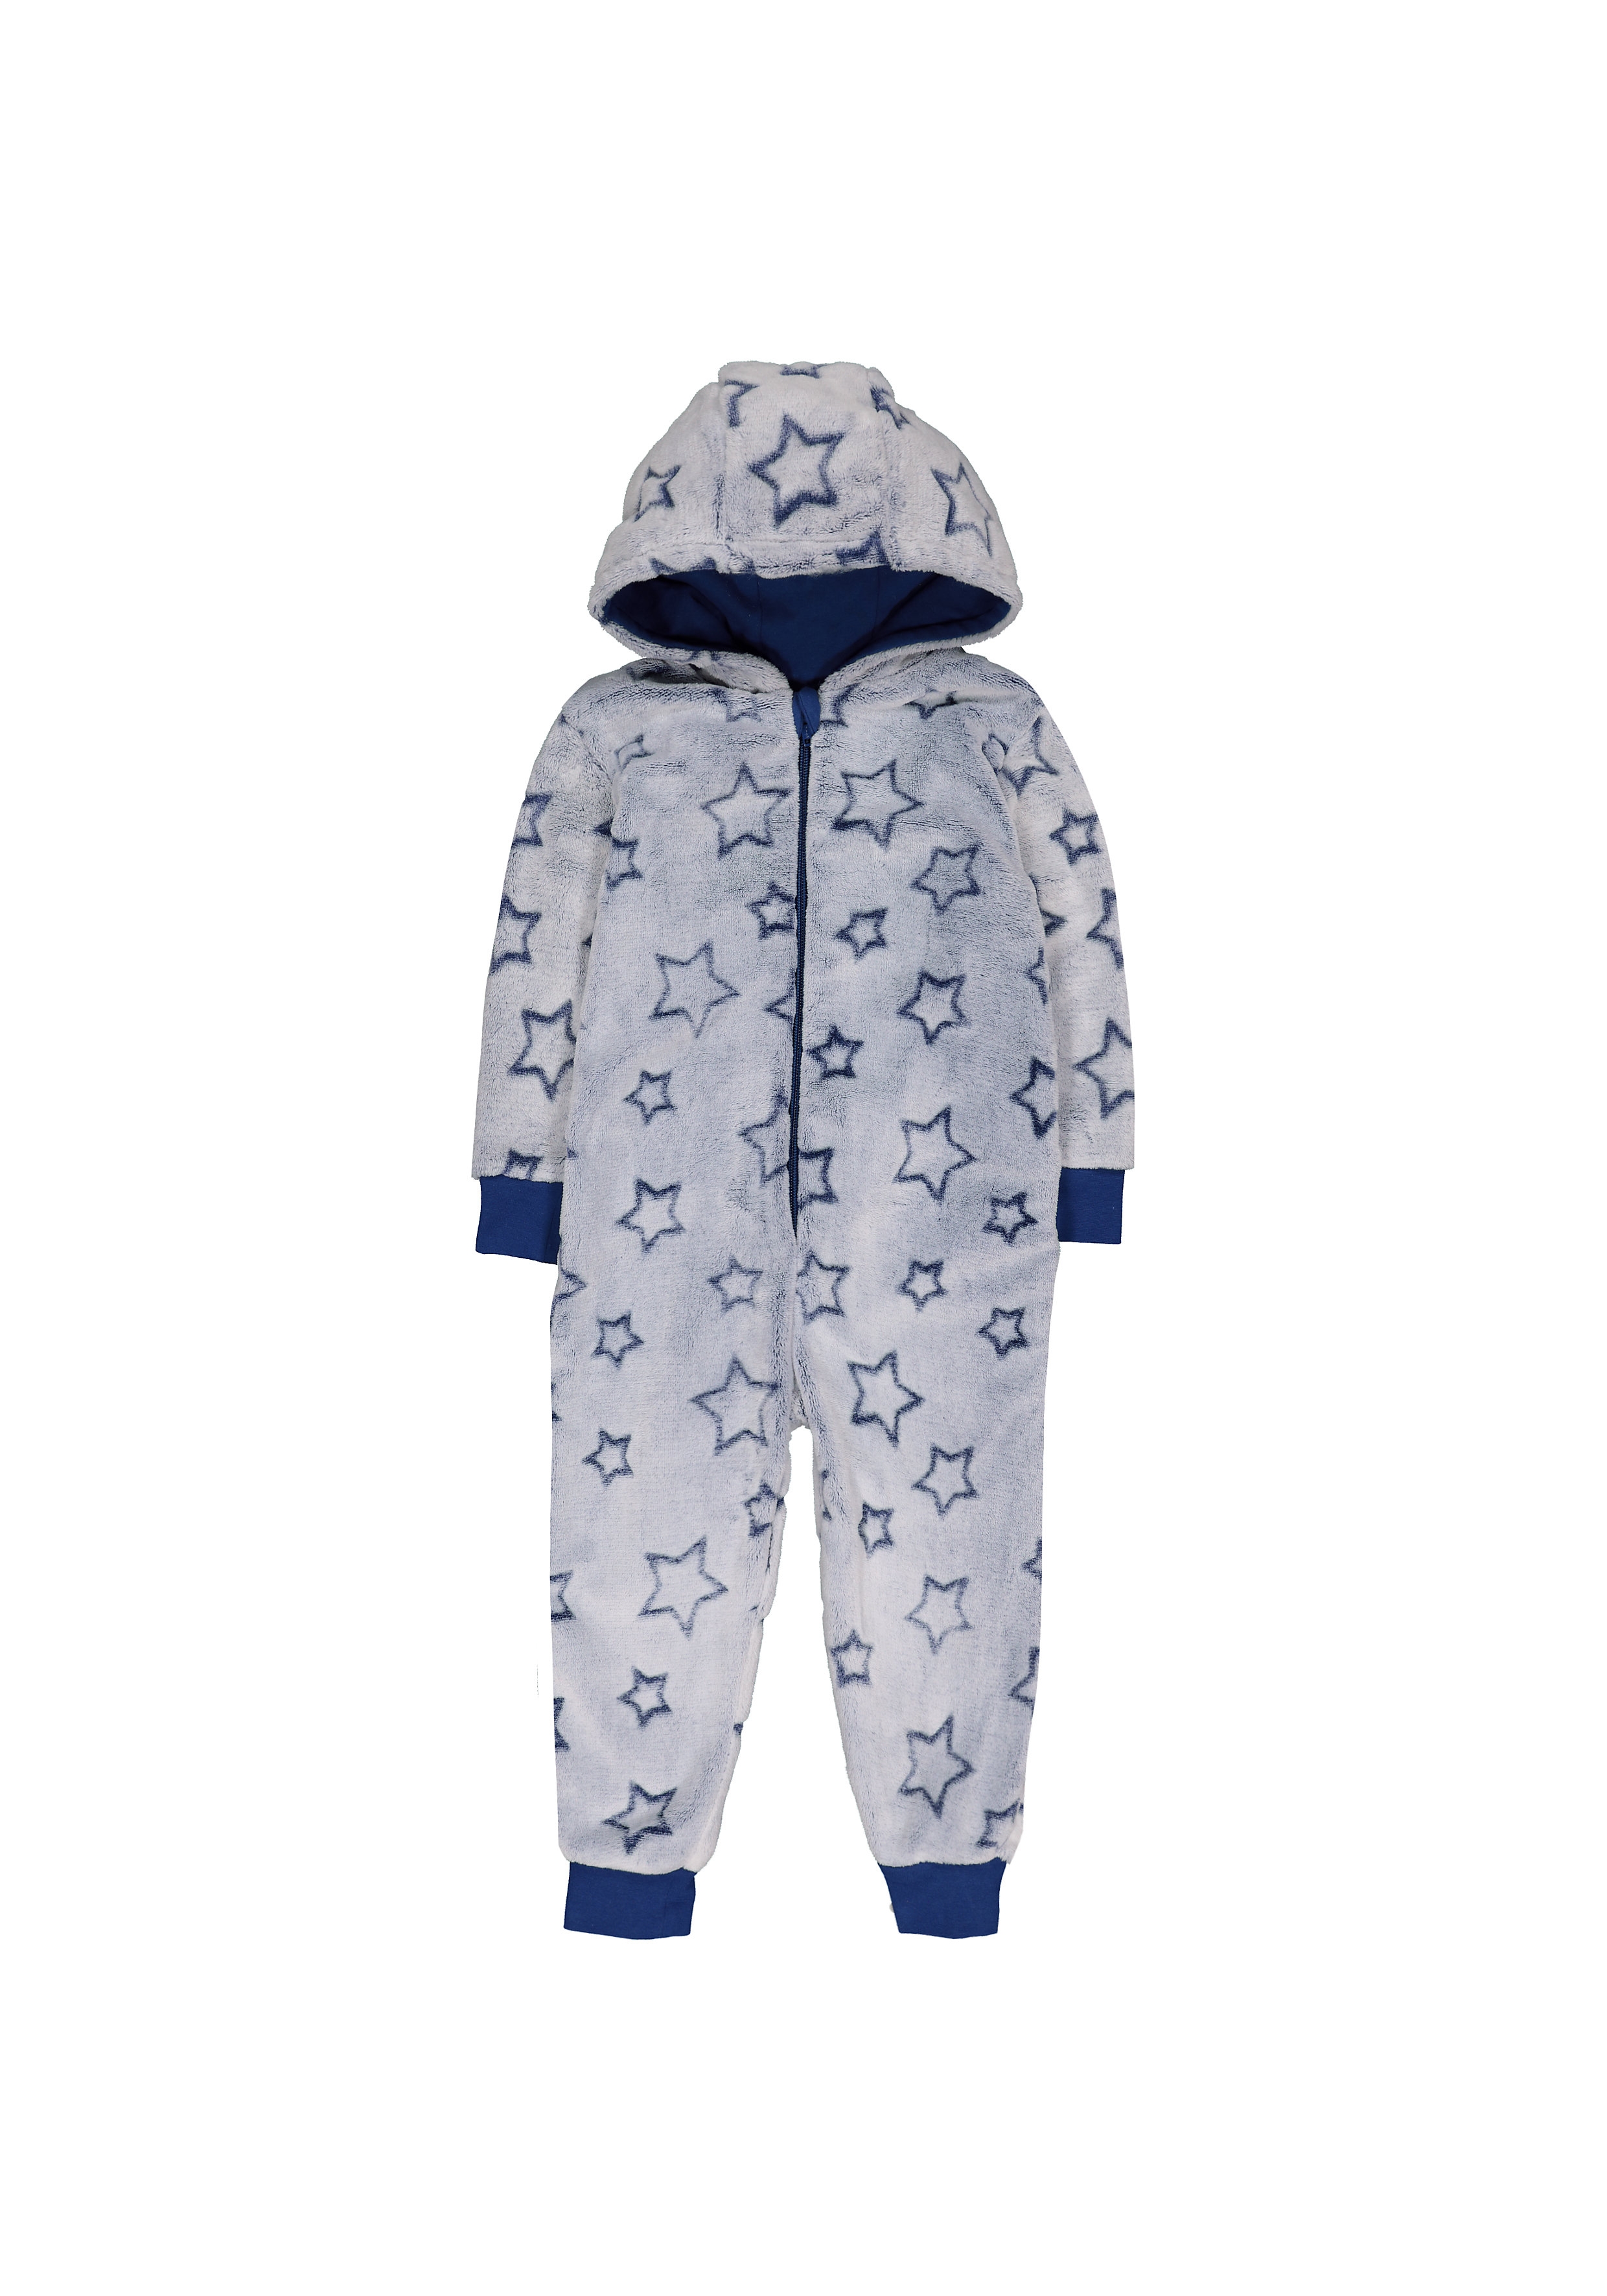 Mothercare | Boys Full Sleeves Fluffy Hooded Romper Star Design - Blue